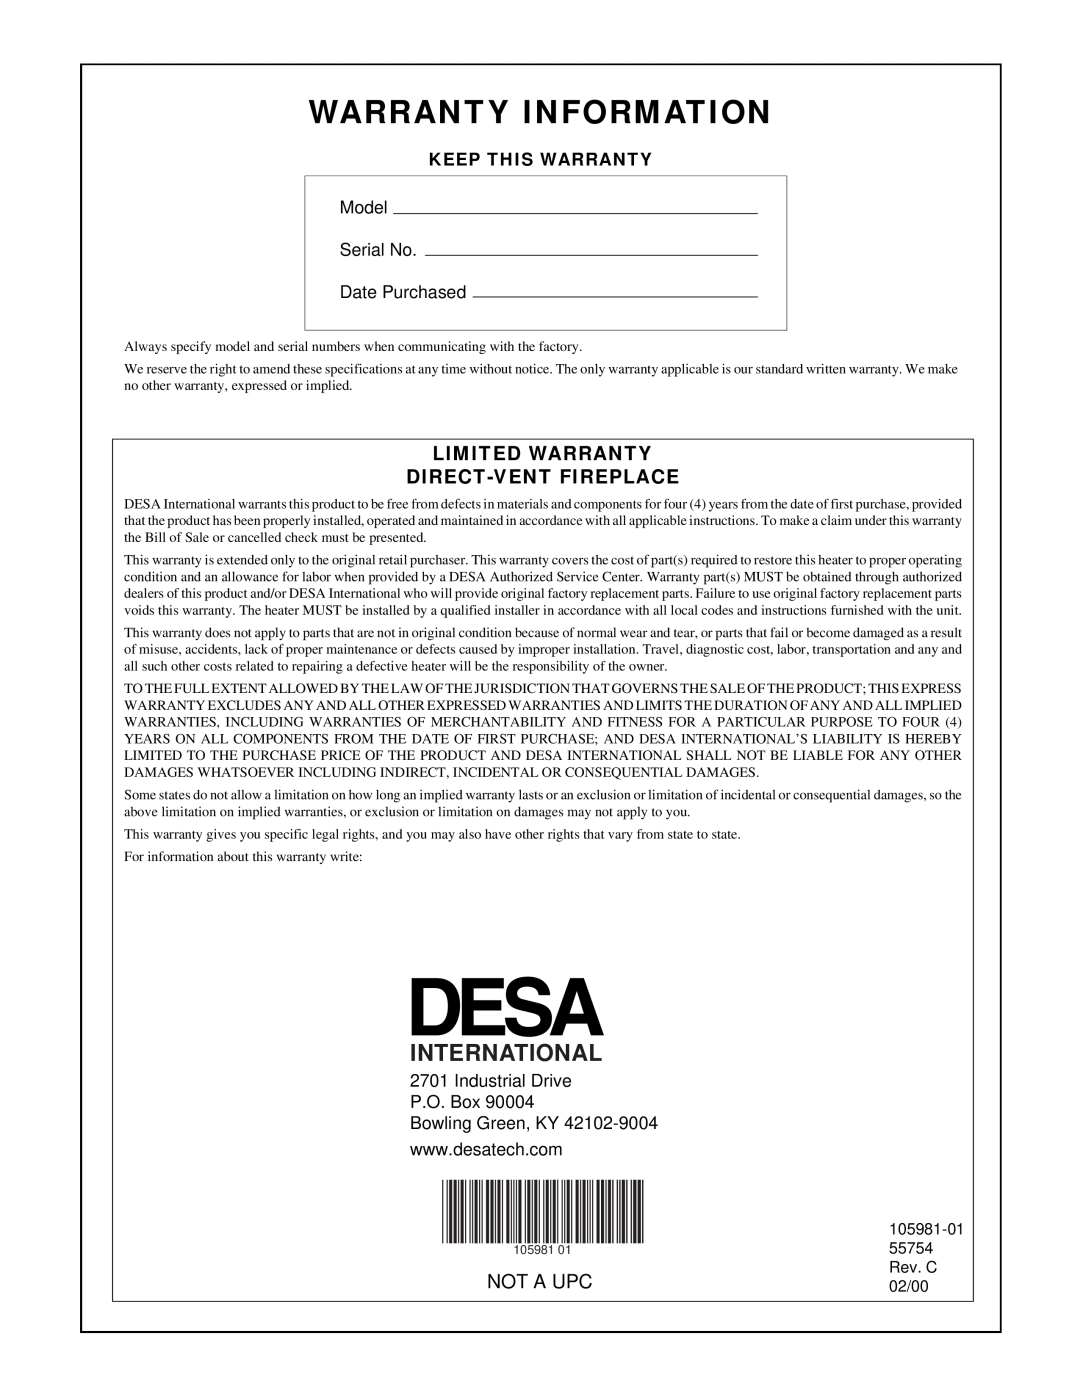 Desa BHDV34NA, BHDV34PA Warranty Information, Limited Warranty Direct-Ventfireplace, International, Not A Upc 